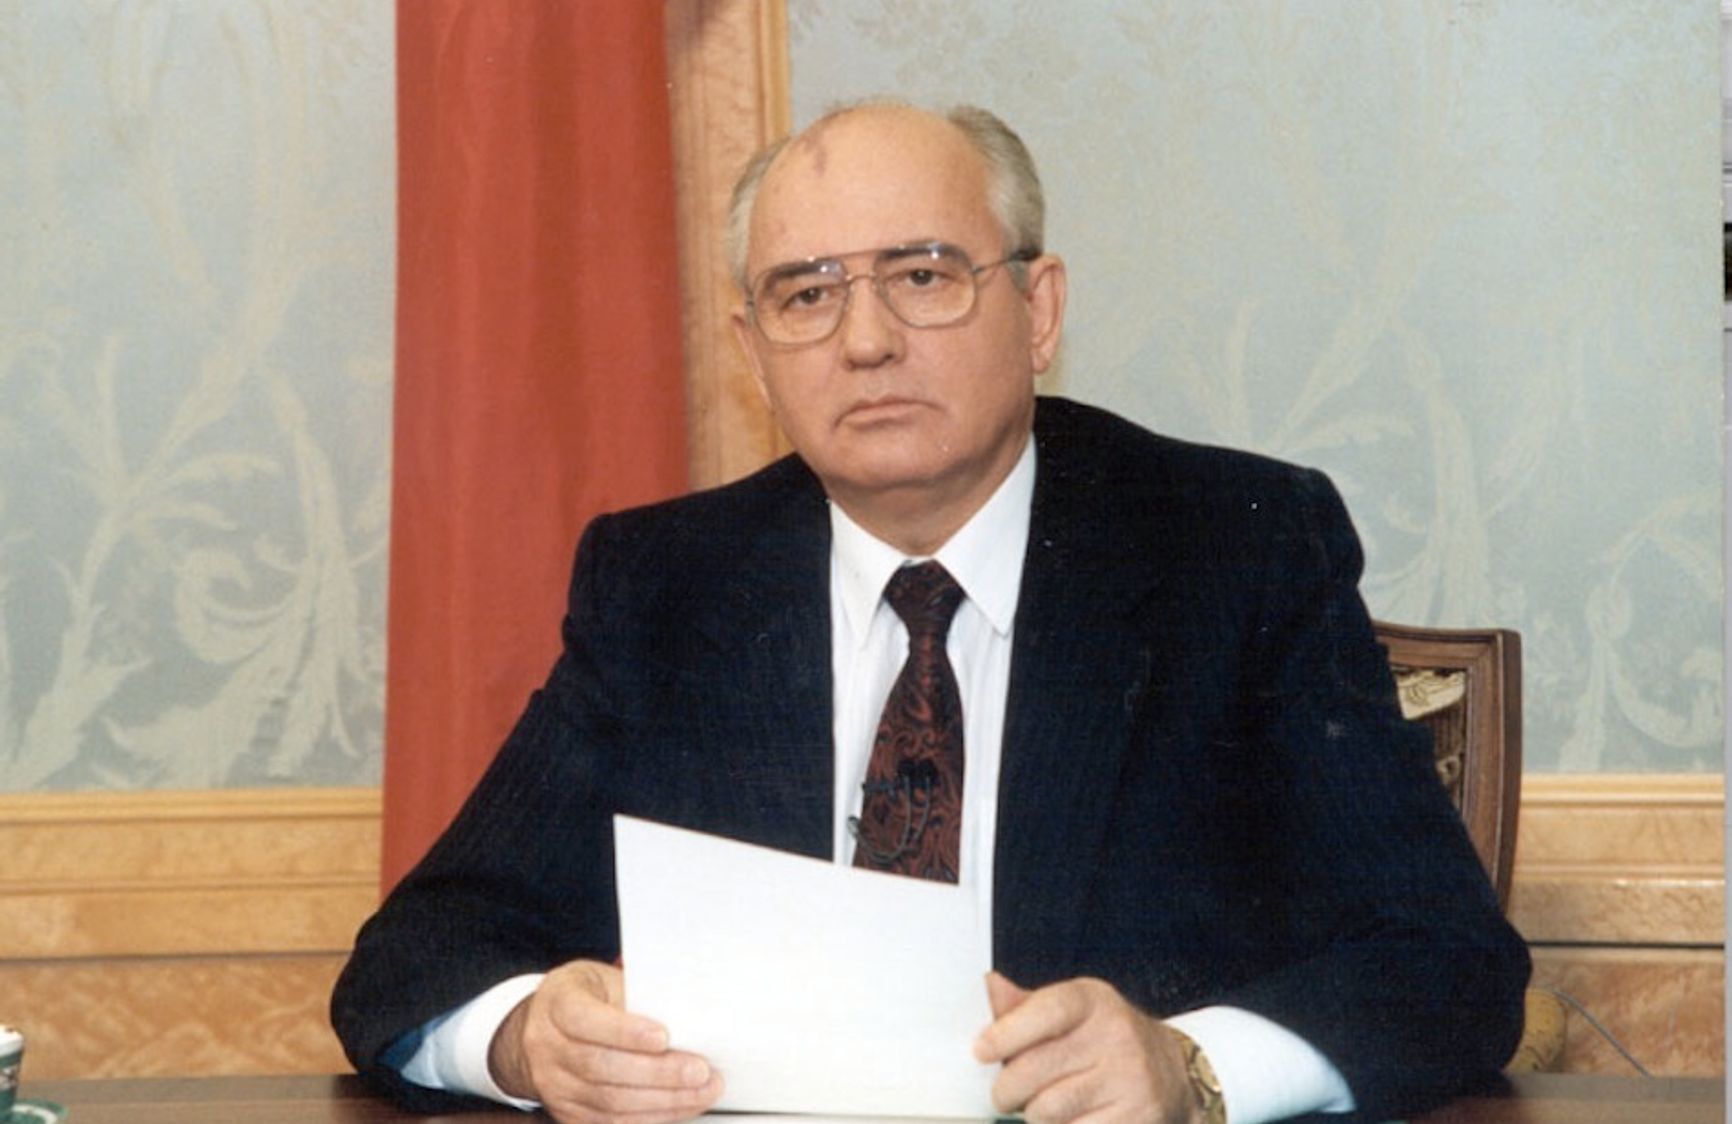 25 декабря 1991 года. Михаил Горбачев в телеобращении к гражданам объявляет о своей отставке